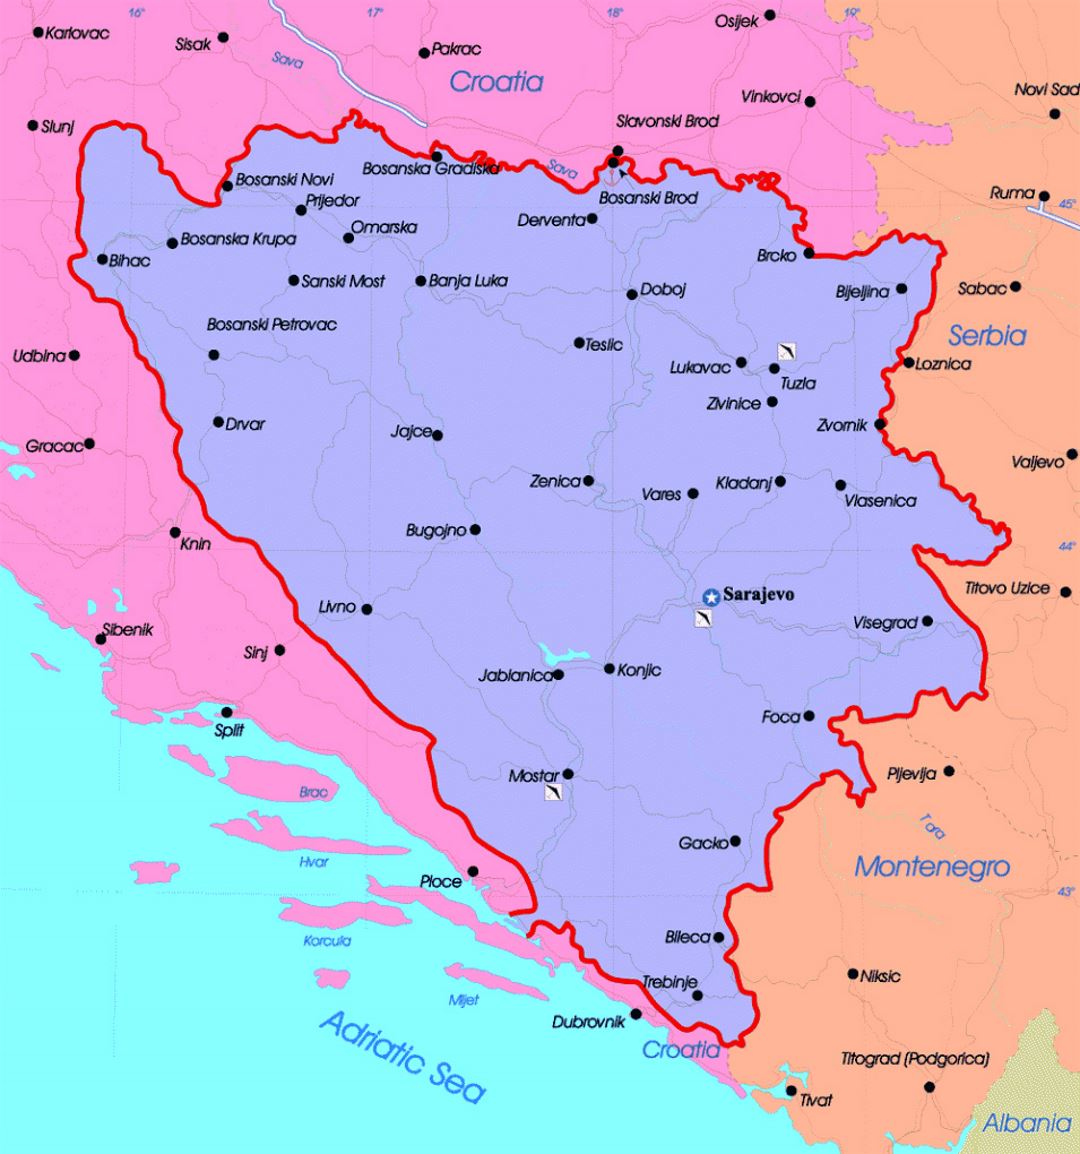 Bosnia And Herzegovina On Map Of Europe - United States Map